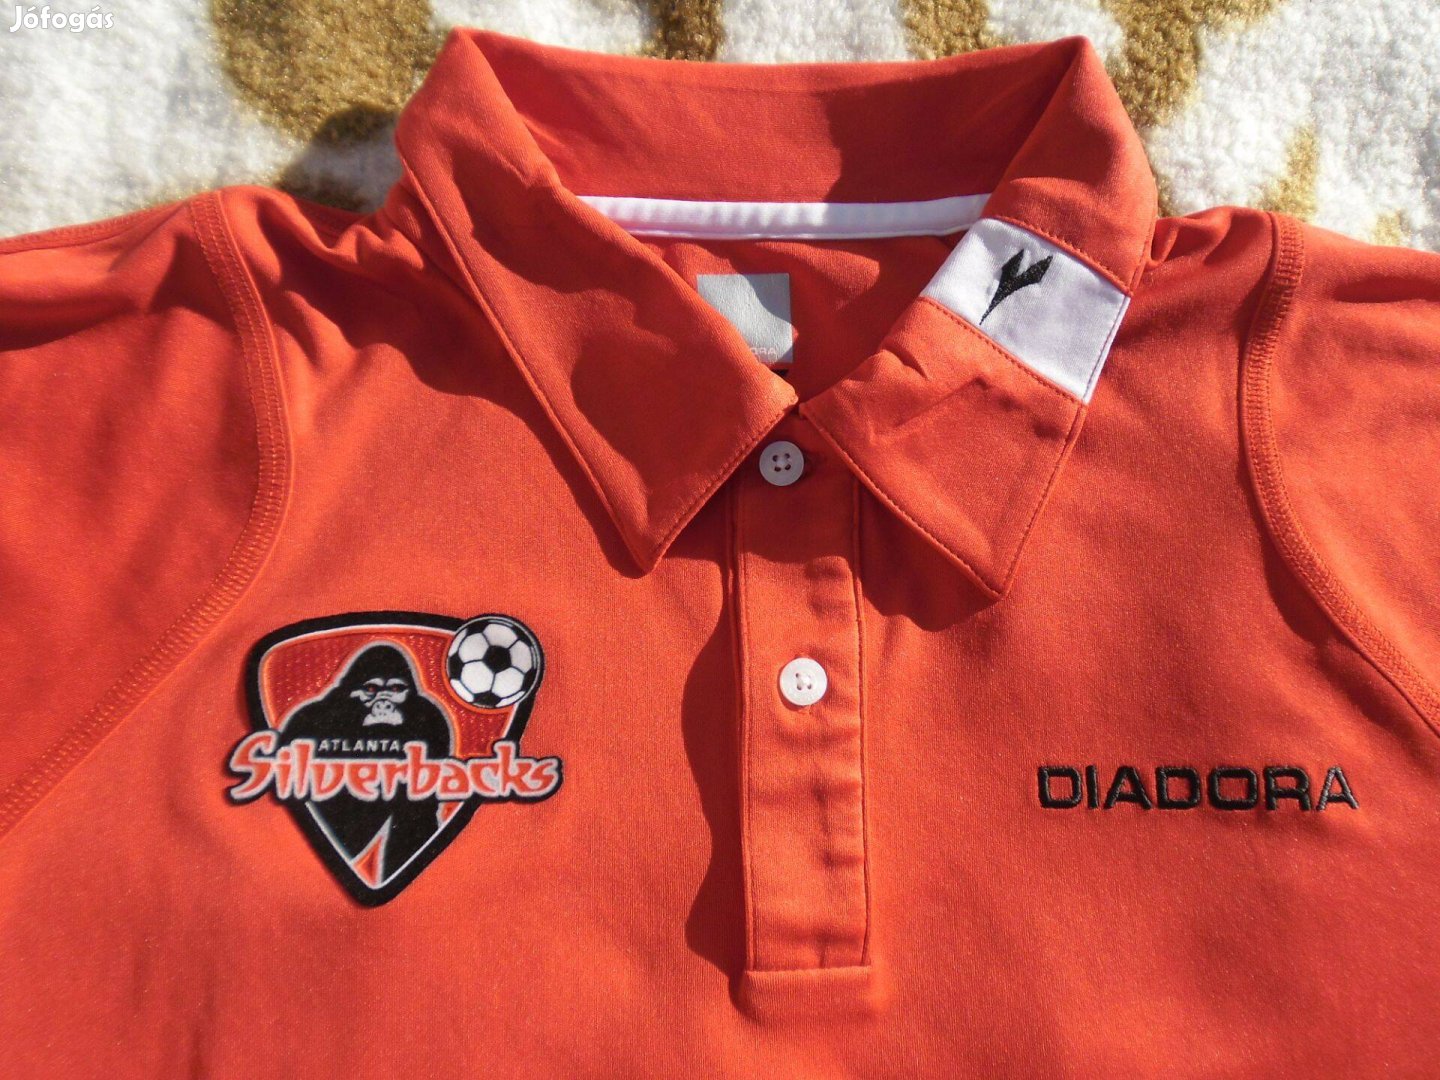 Atlanta Silverbacks FC mez - Diadora márkájú